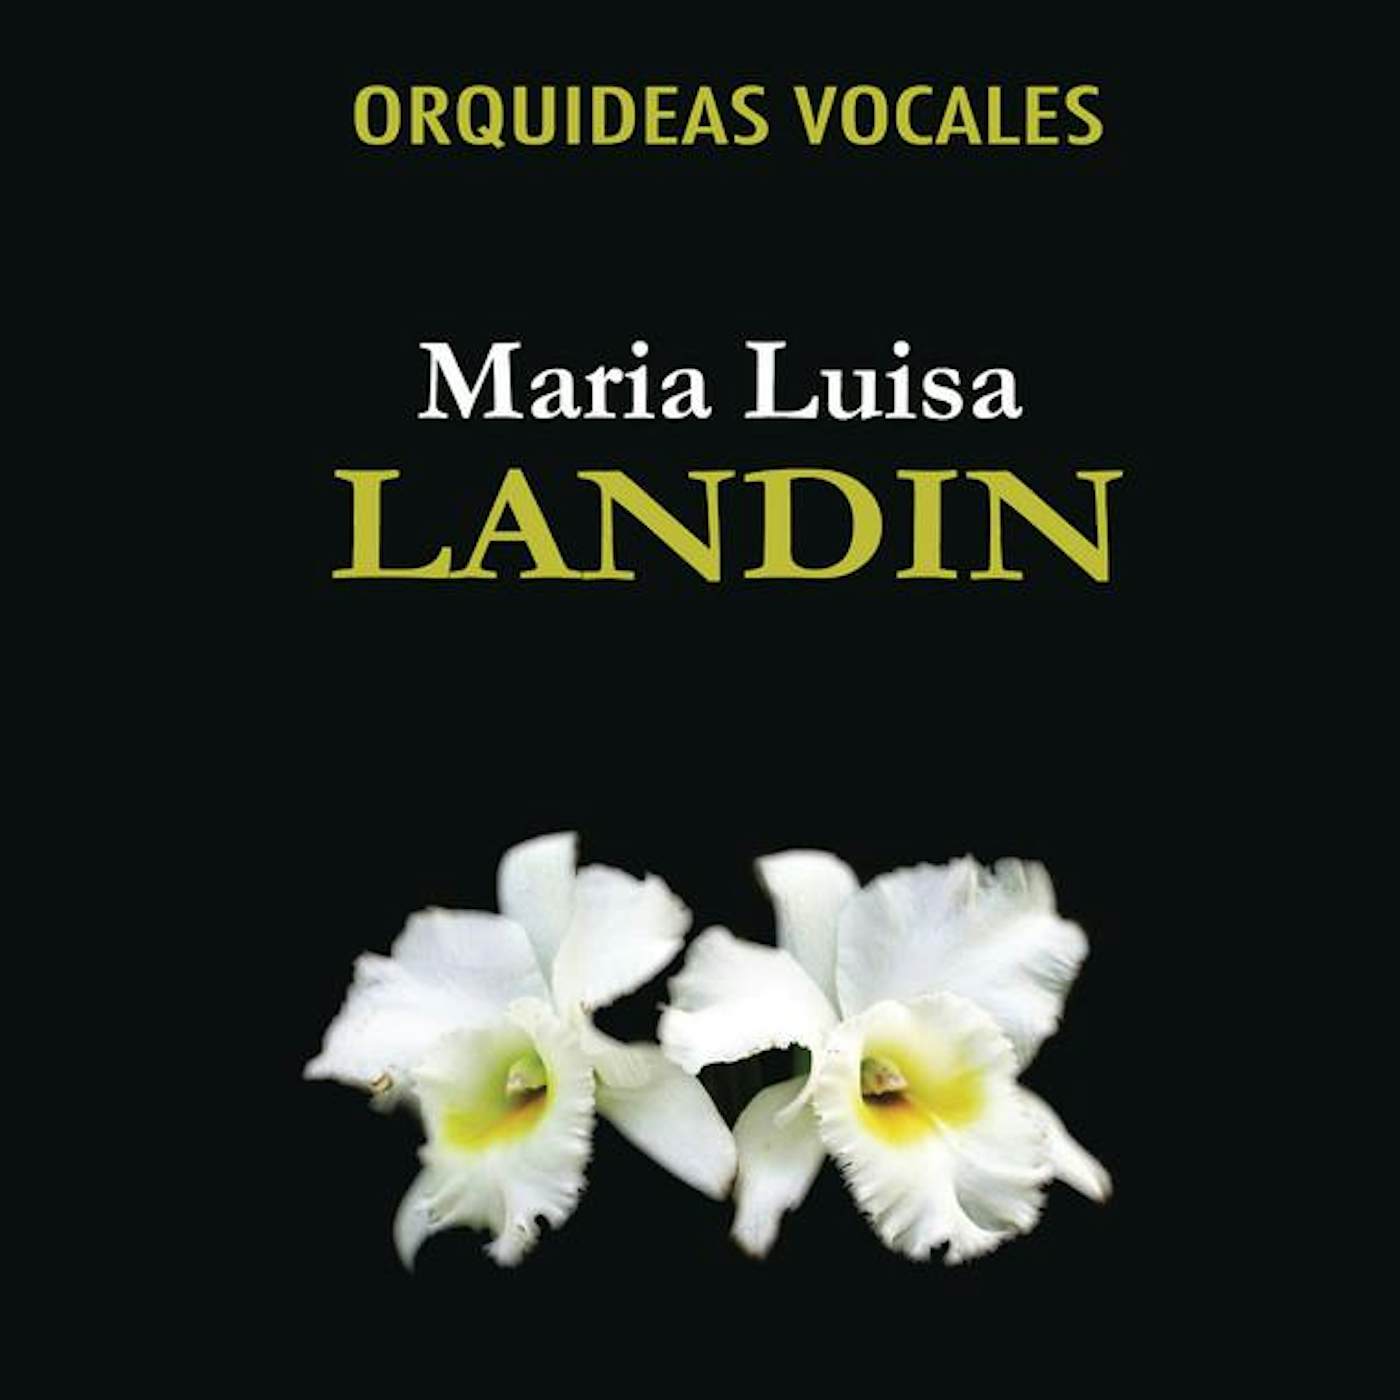 Maria Luisa Landin